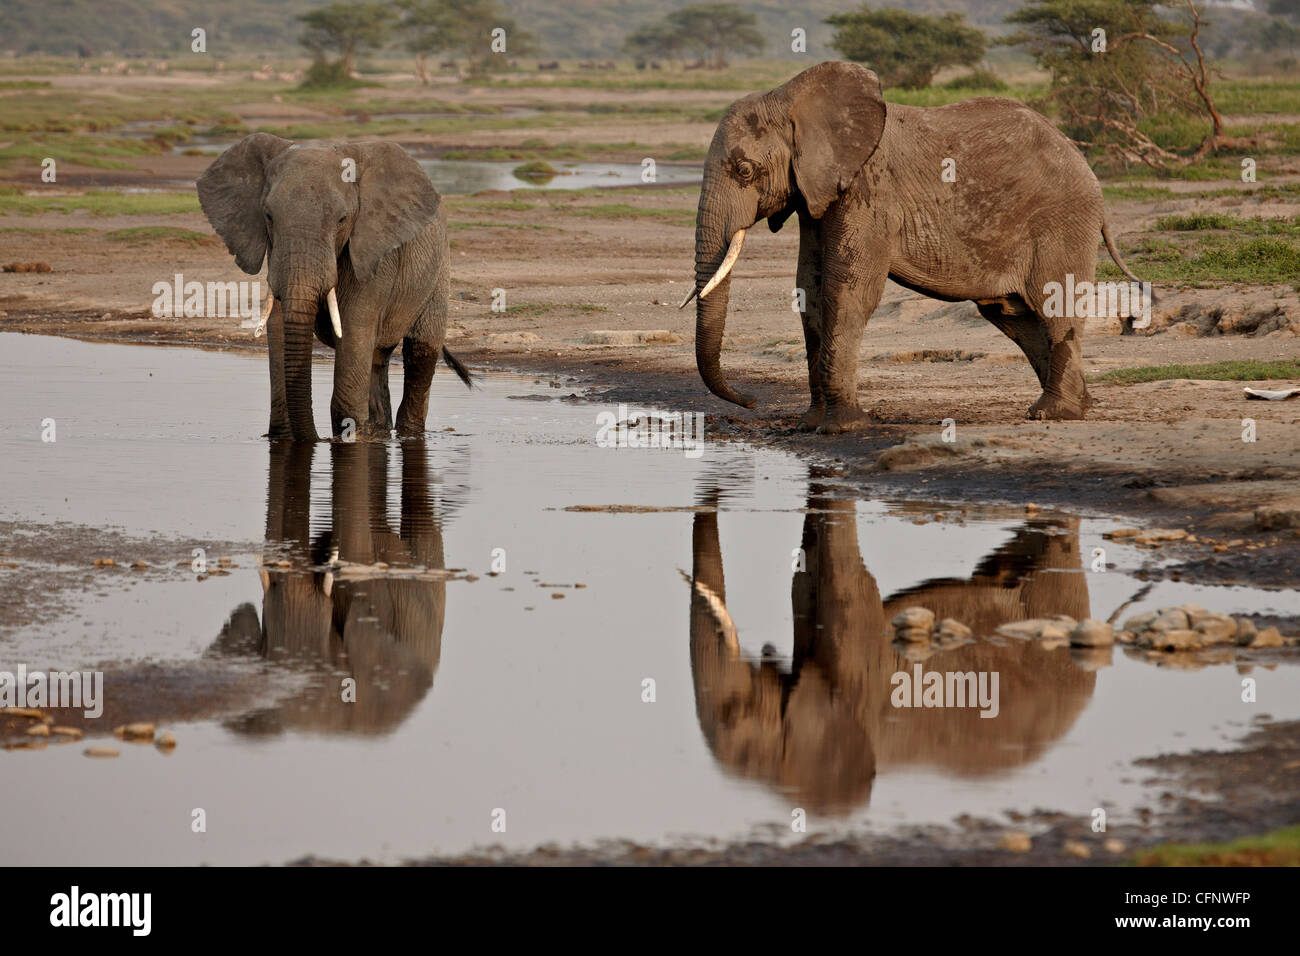 Deux African elephant (Loxodonta africana) de boire, le Parc National du Serengeti, Tanzanie, Afrique orientale, Afrique du Sud Banque D'Images